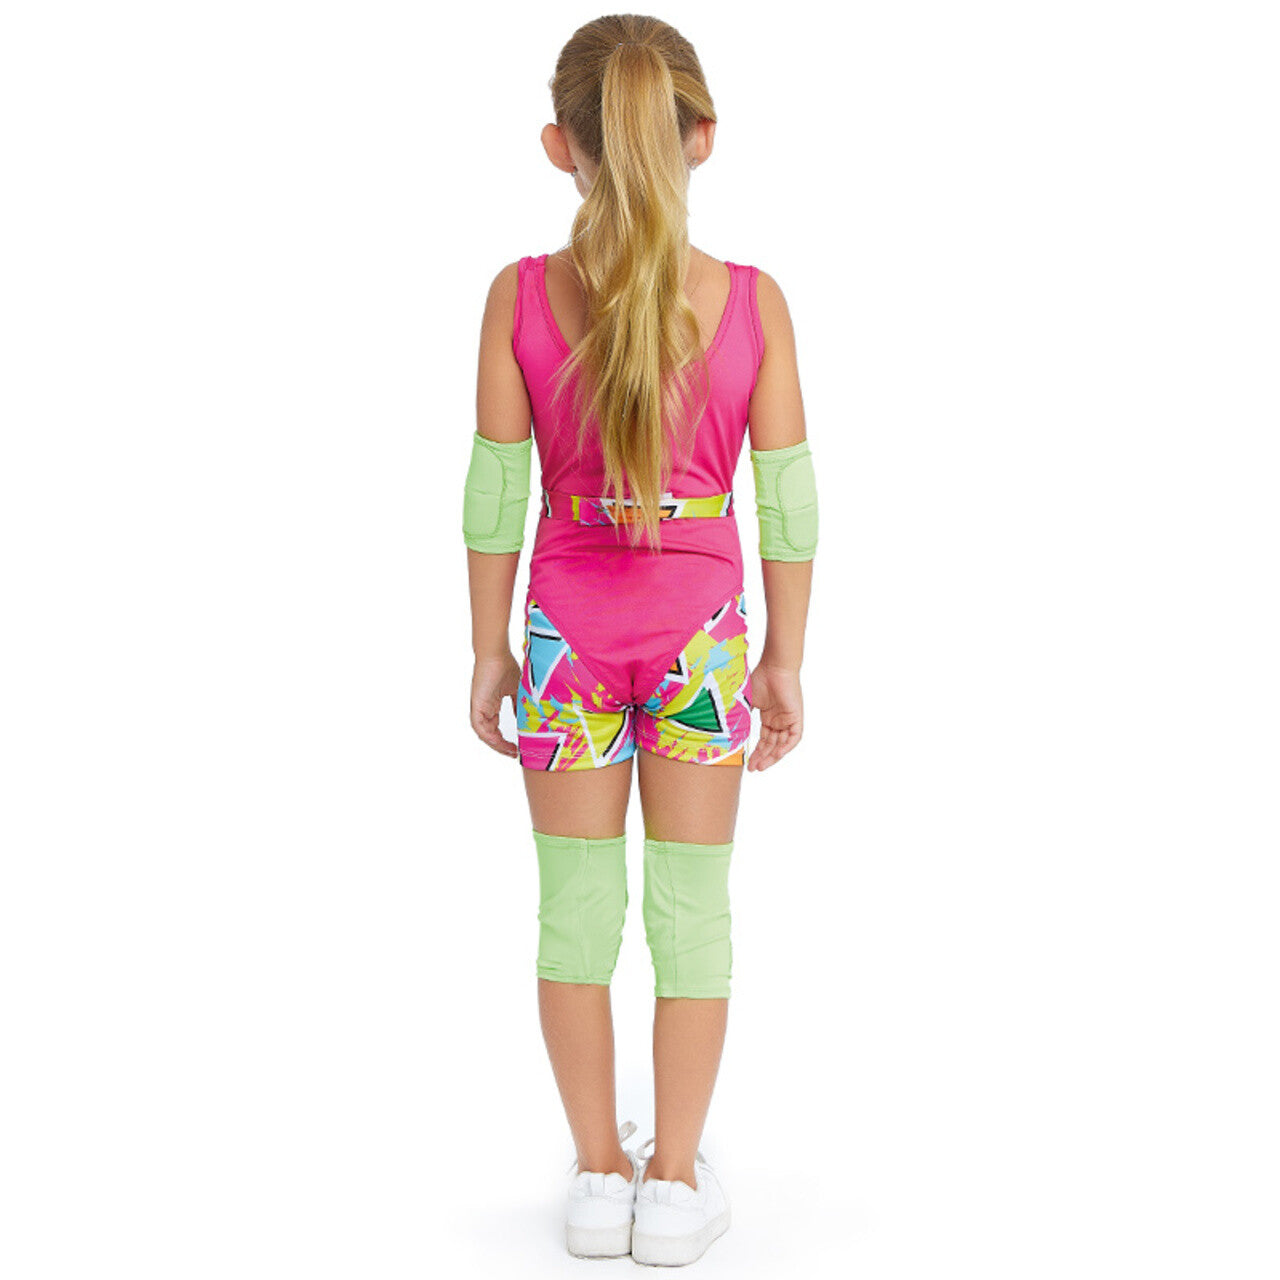 Acheter en ligne le déguisement Barbie Vichy pour fille